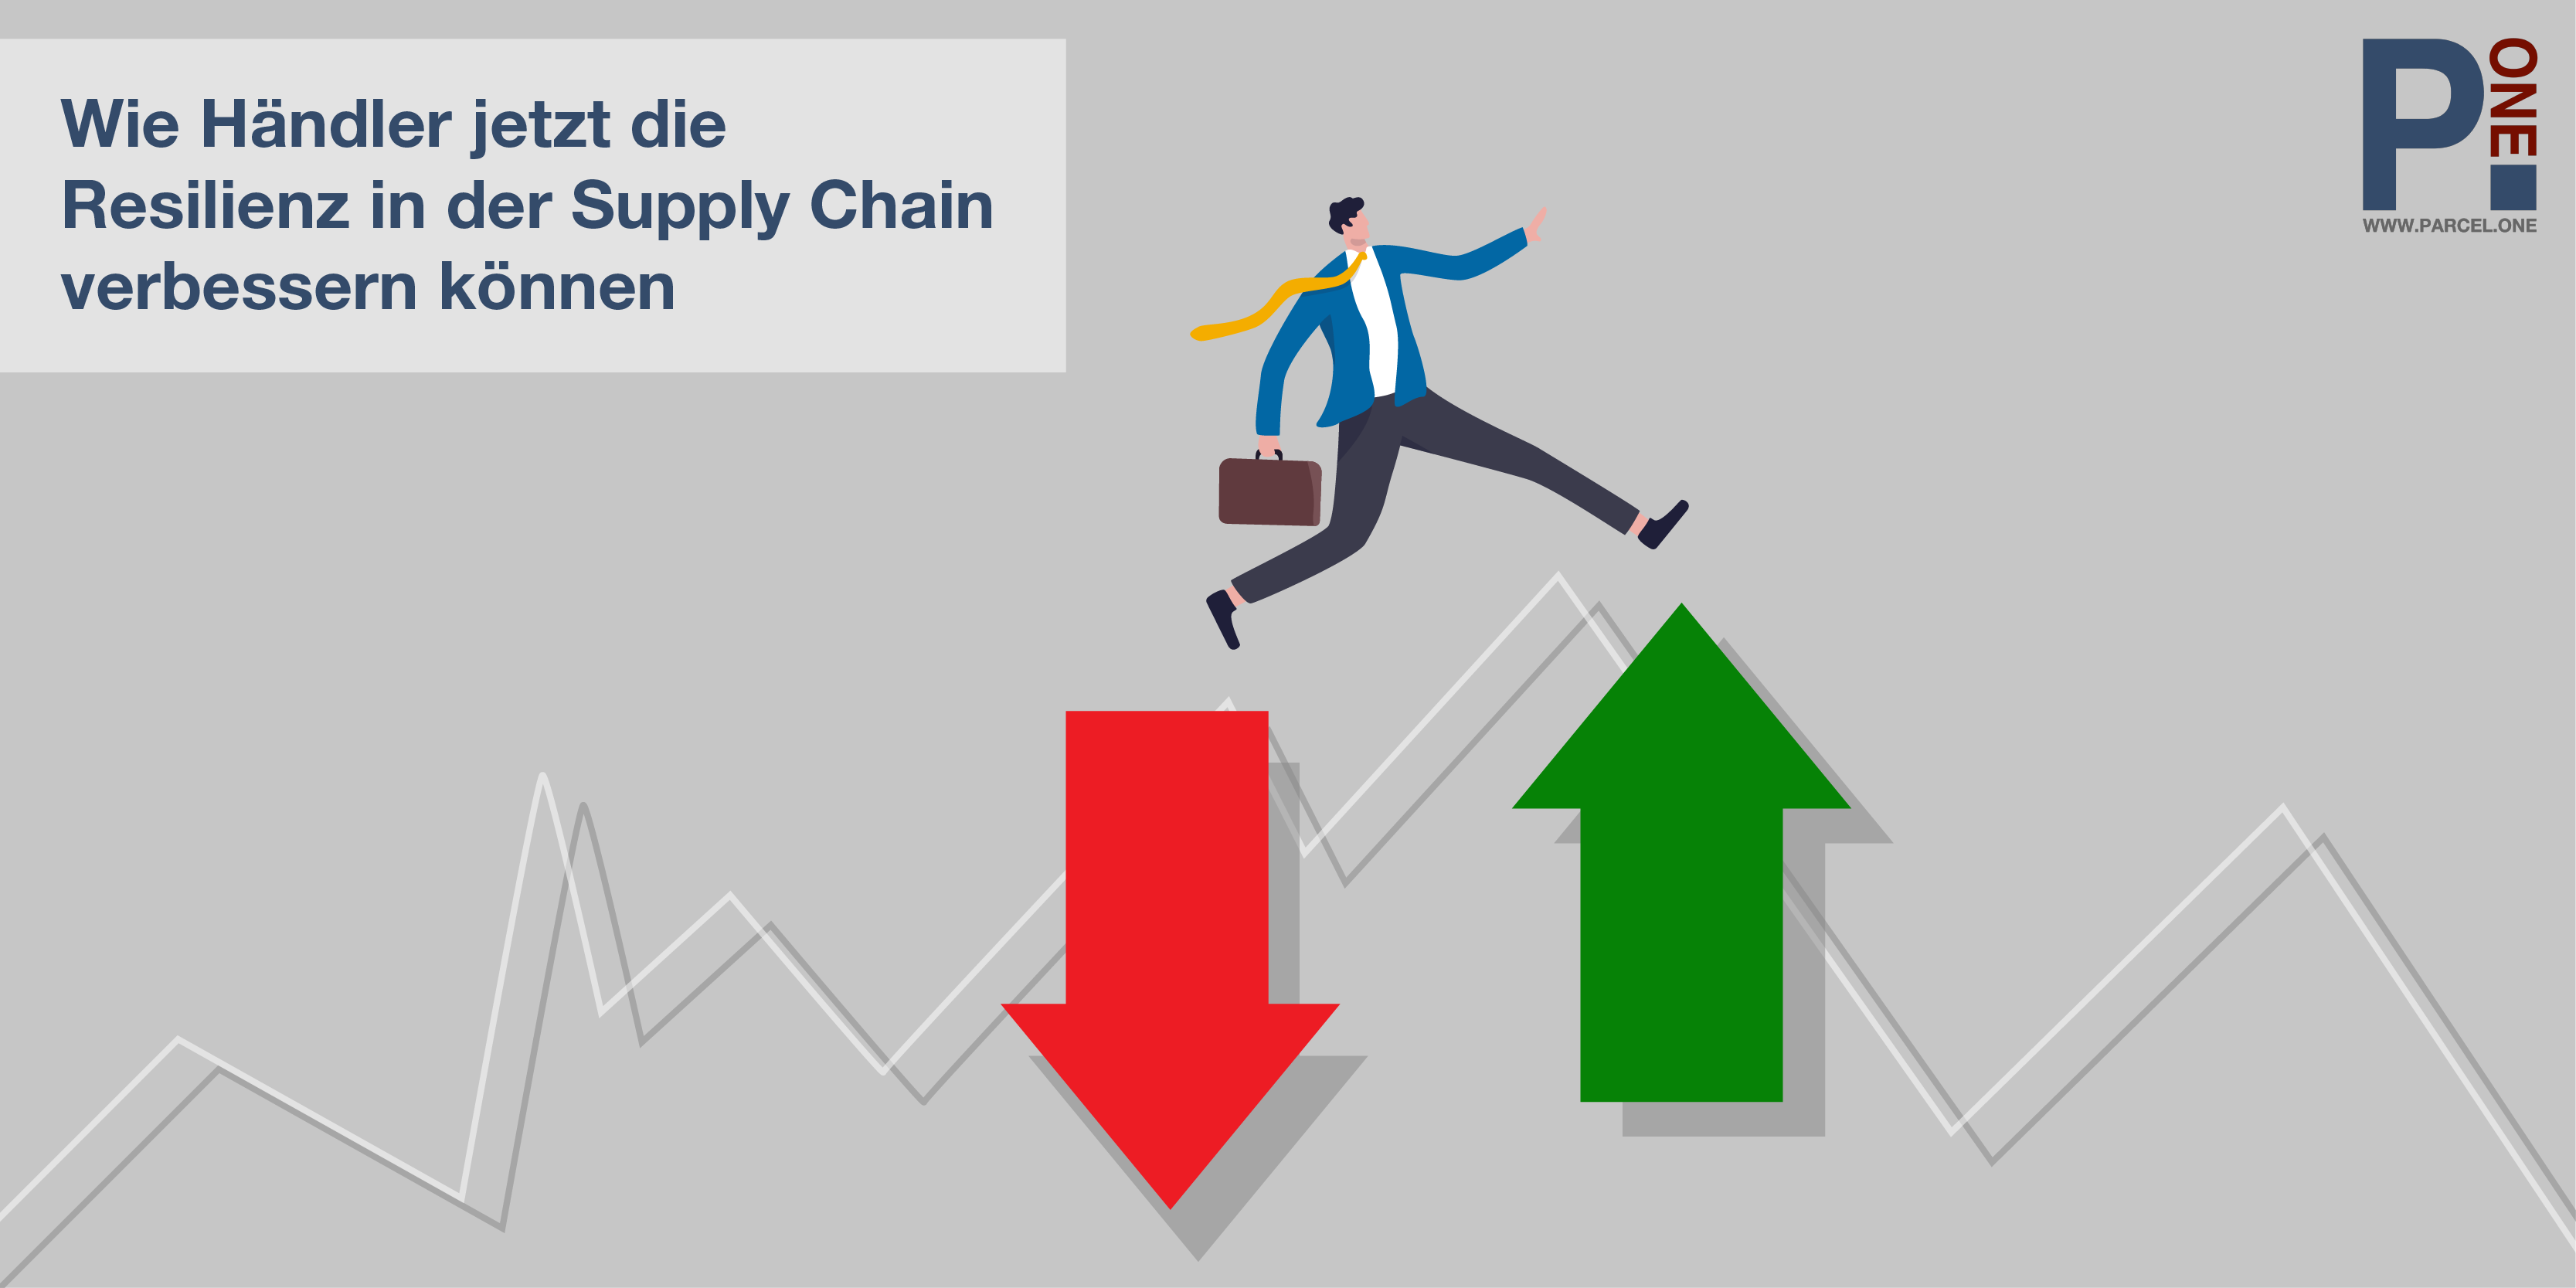 Reibungslose Lieferkette – wie Händler jetzt die Resilienz in der Supply Chain verbessern können